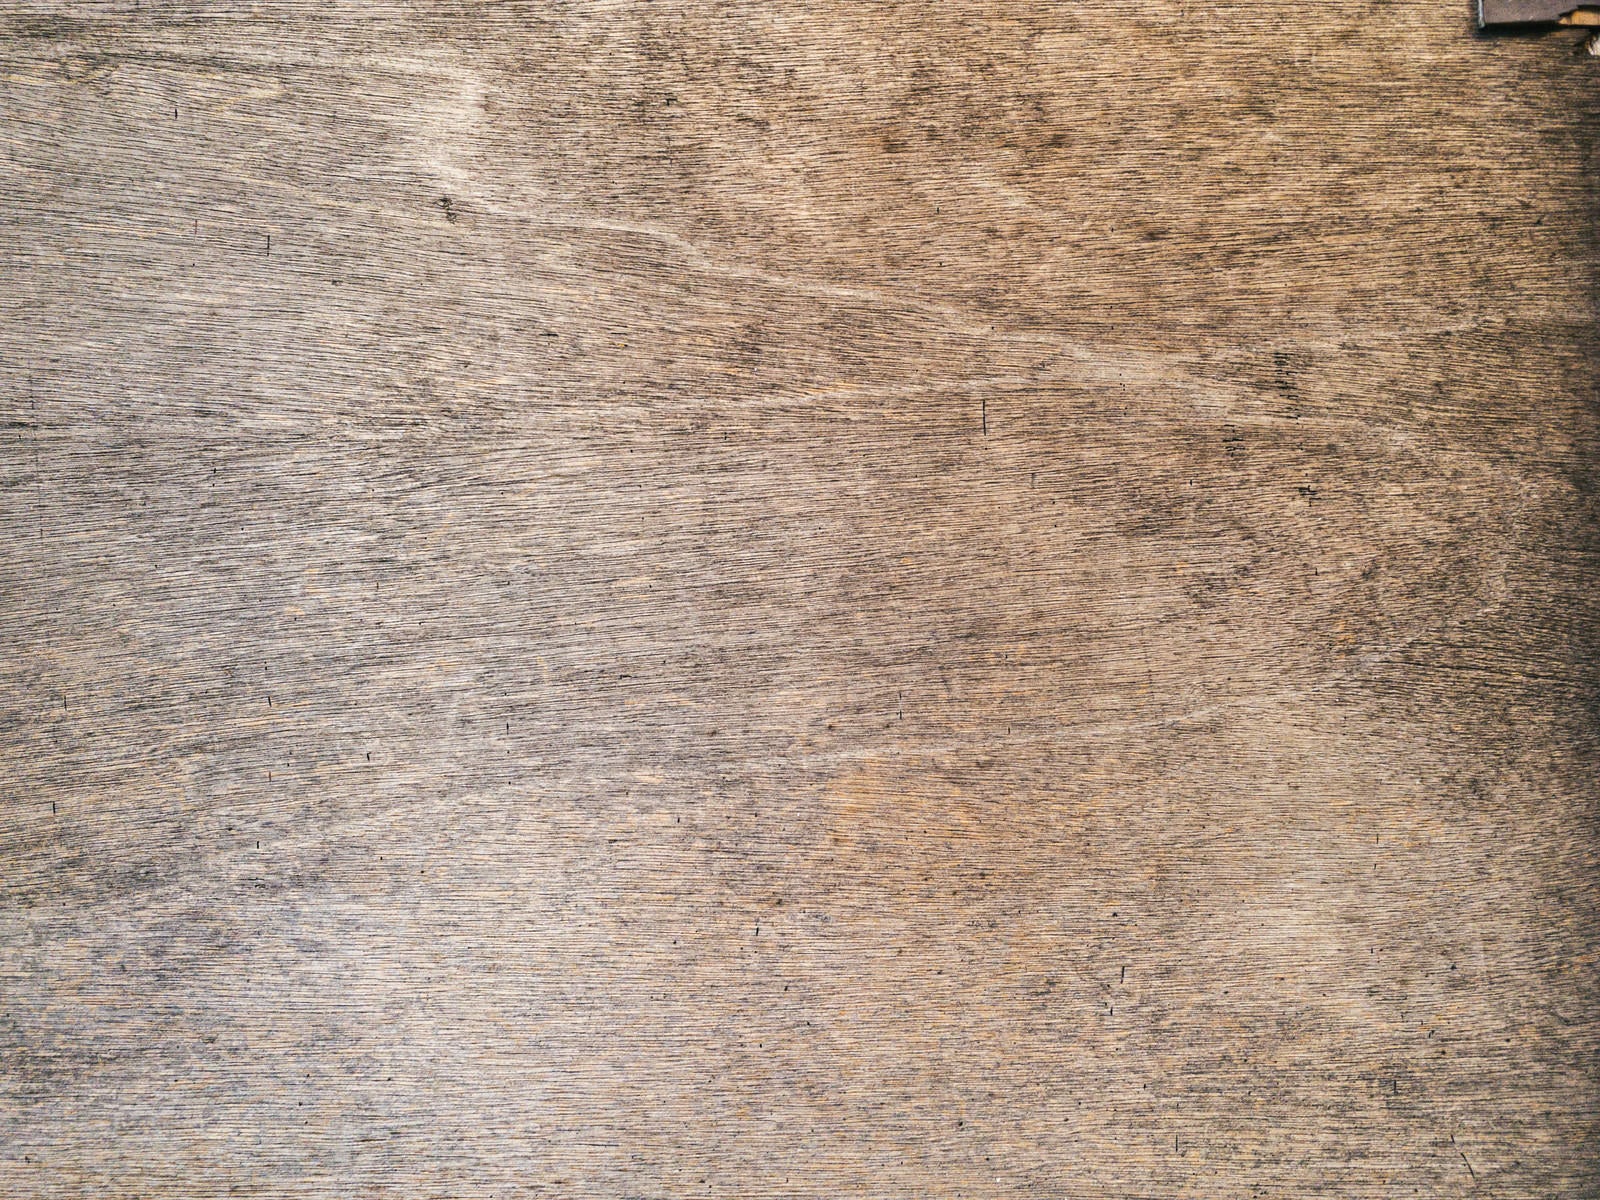 「黒シミ残るベニヤ板」の写真